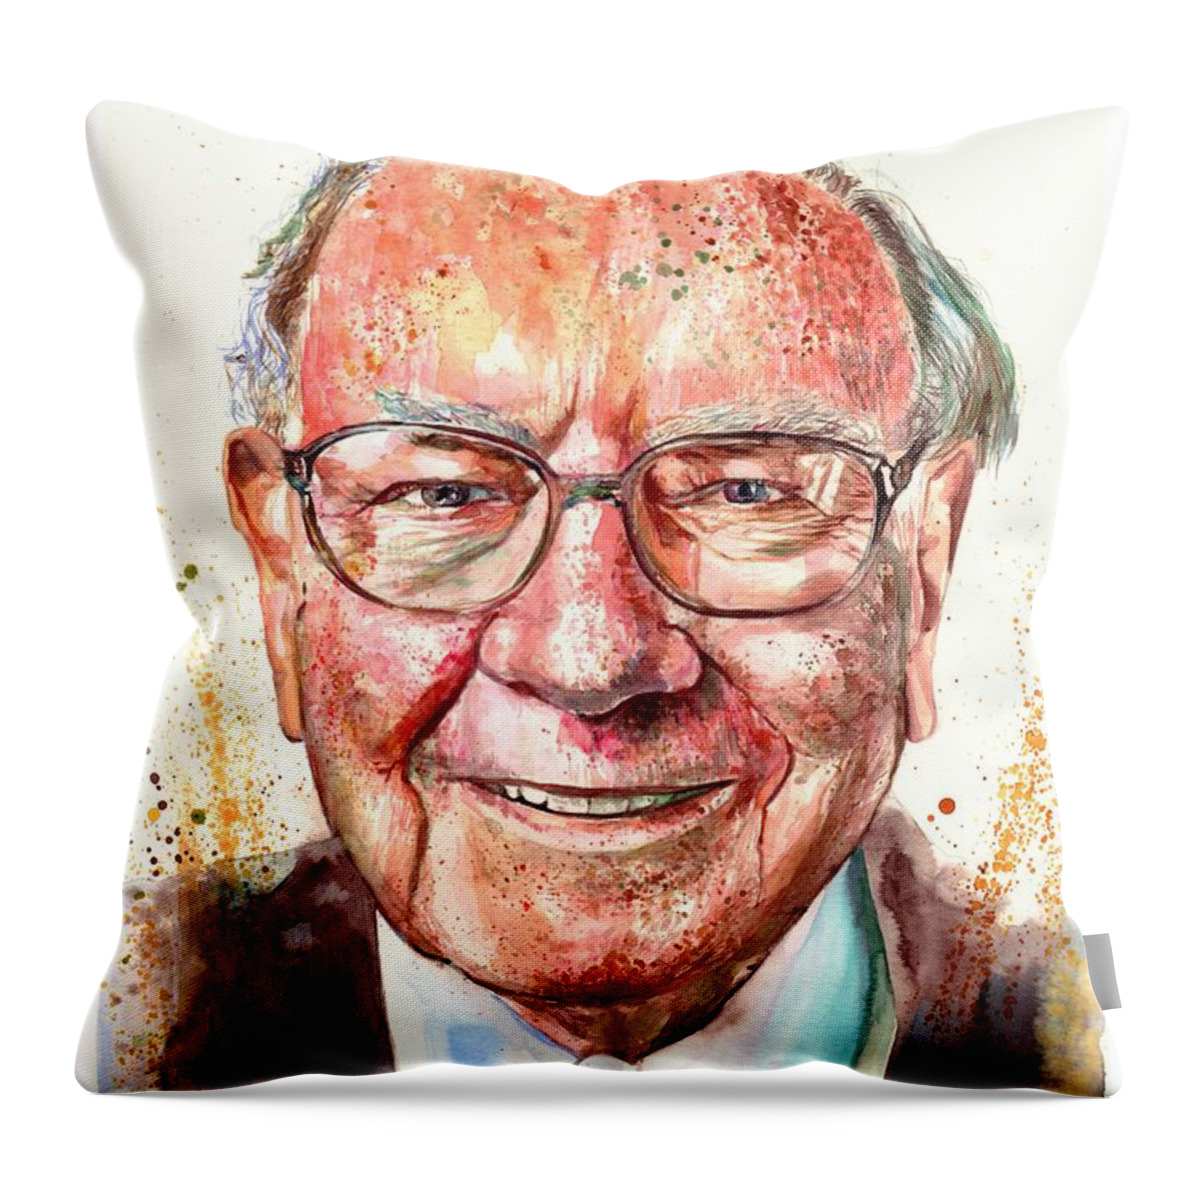 Warren Throw Pillow featuring the painting Warren Buffett portrait by Suzann Sines